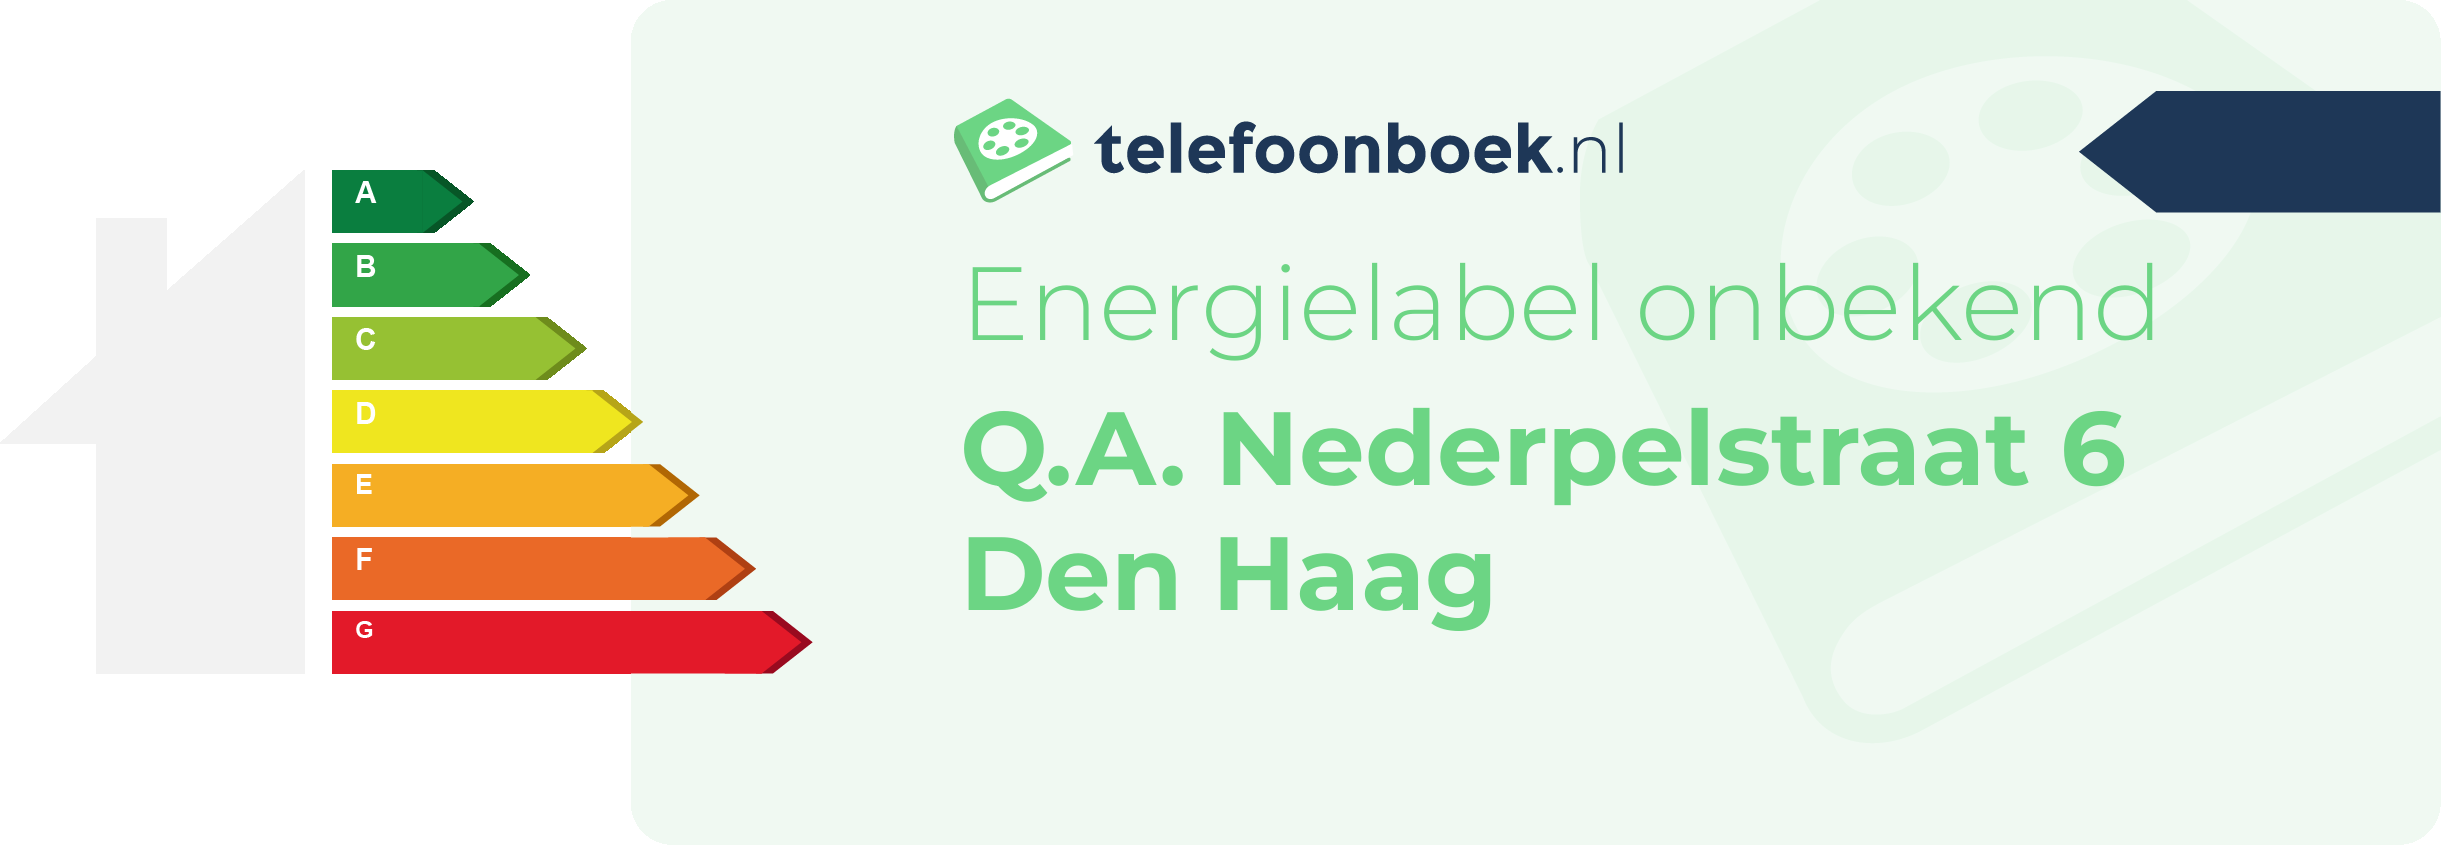 Energielabel Q.A. Nederpelstraat 6 Den Haag